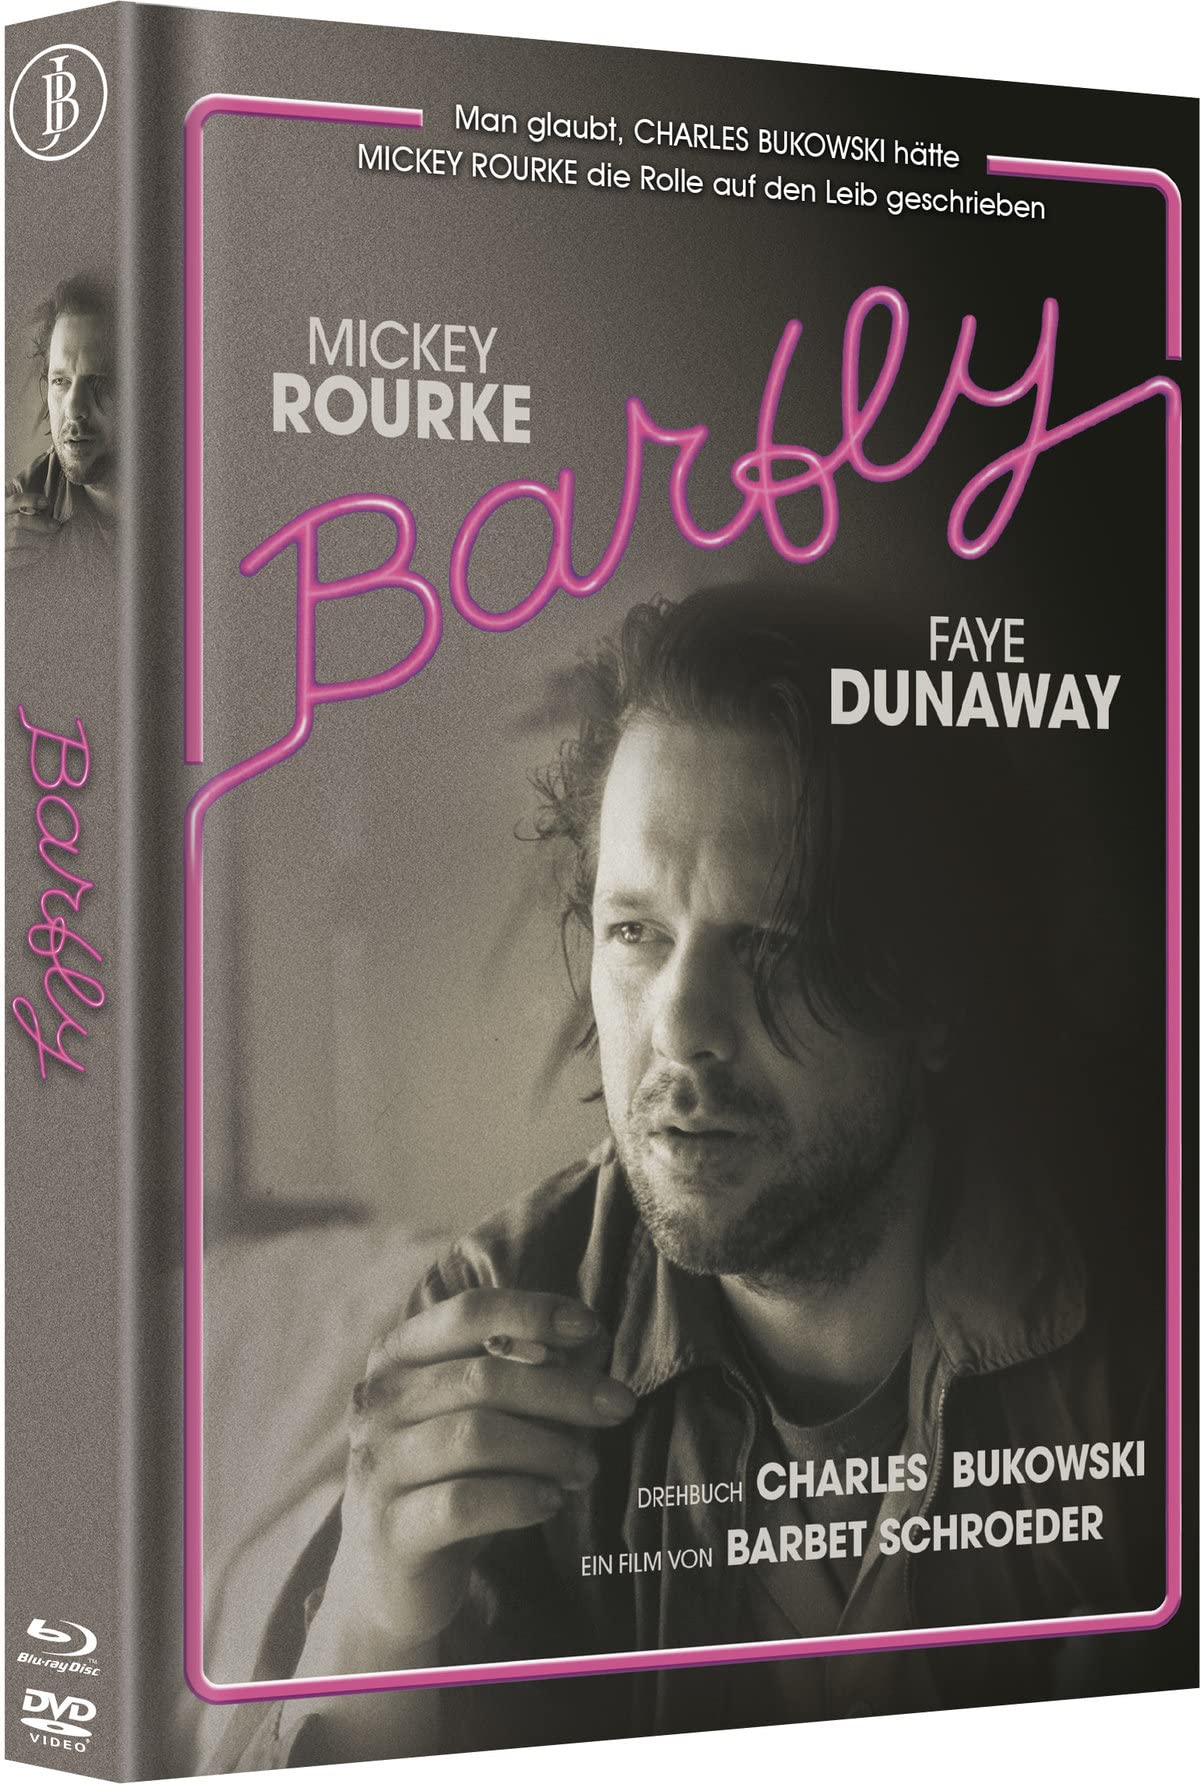 Barfly - Mediabook - Limitiert auf 222 Stück - Cover A (Blu-ray + DVD)